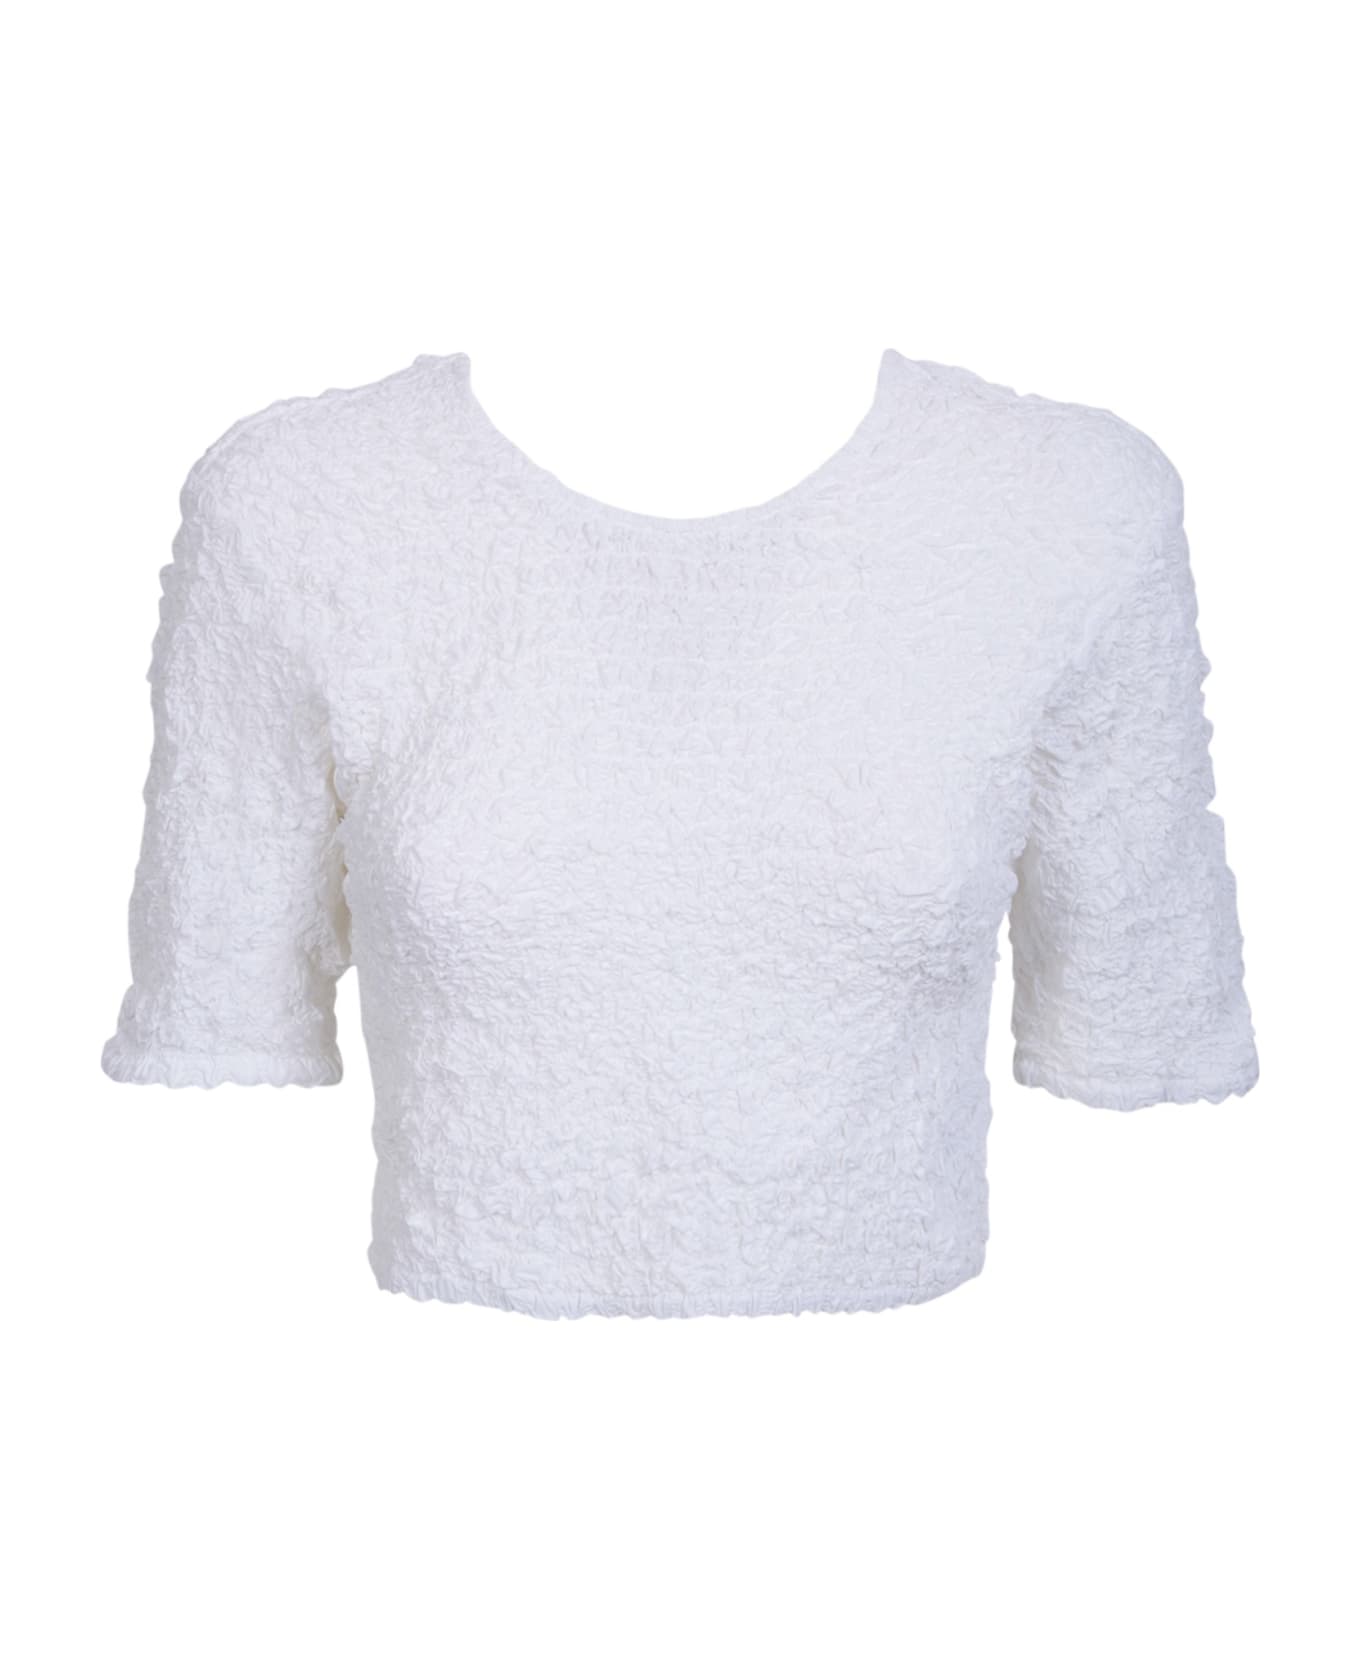 Ganni Textured Organic Cotton White Crop Top By Ganni - White